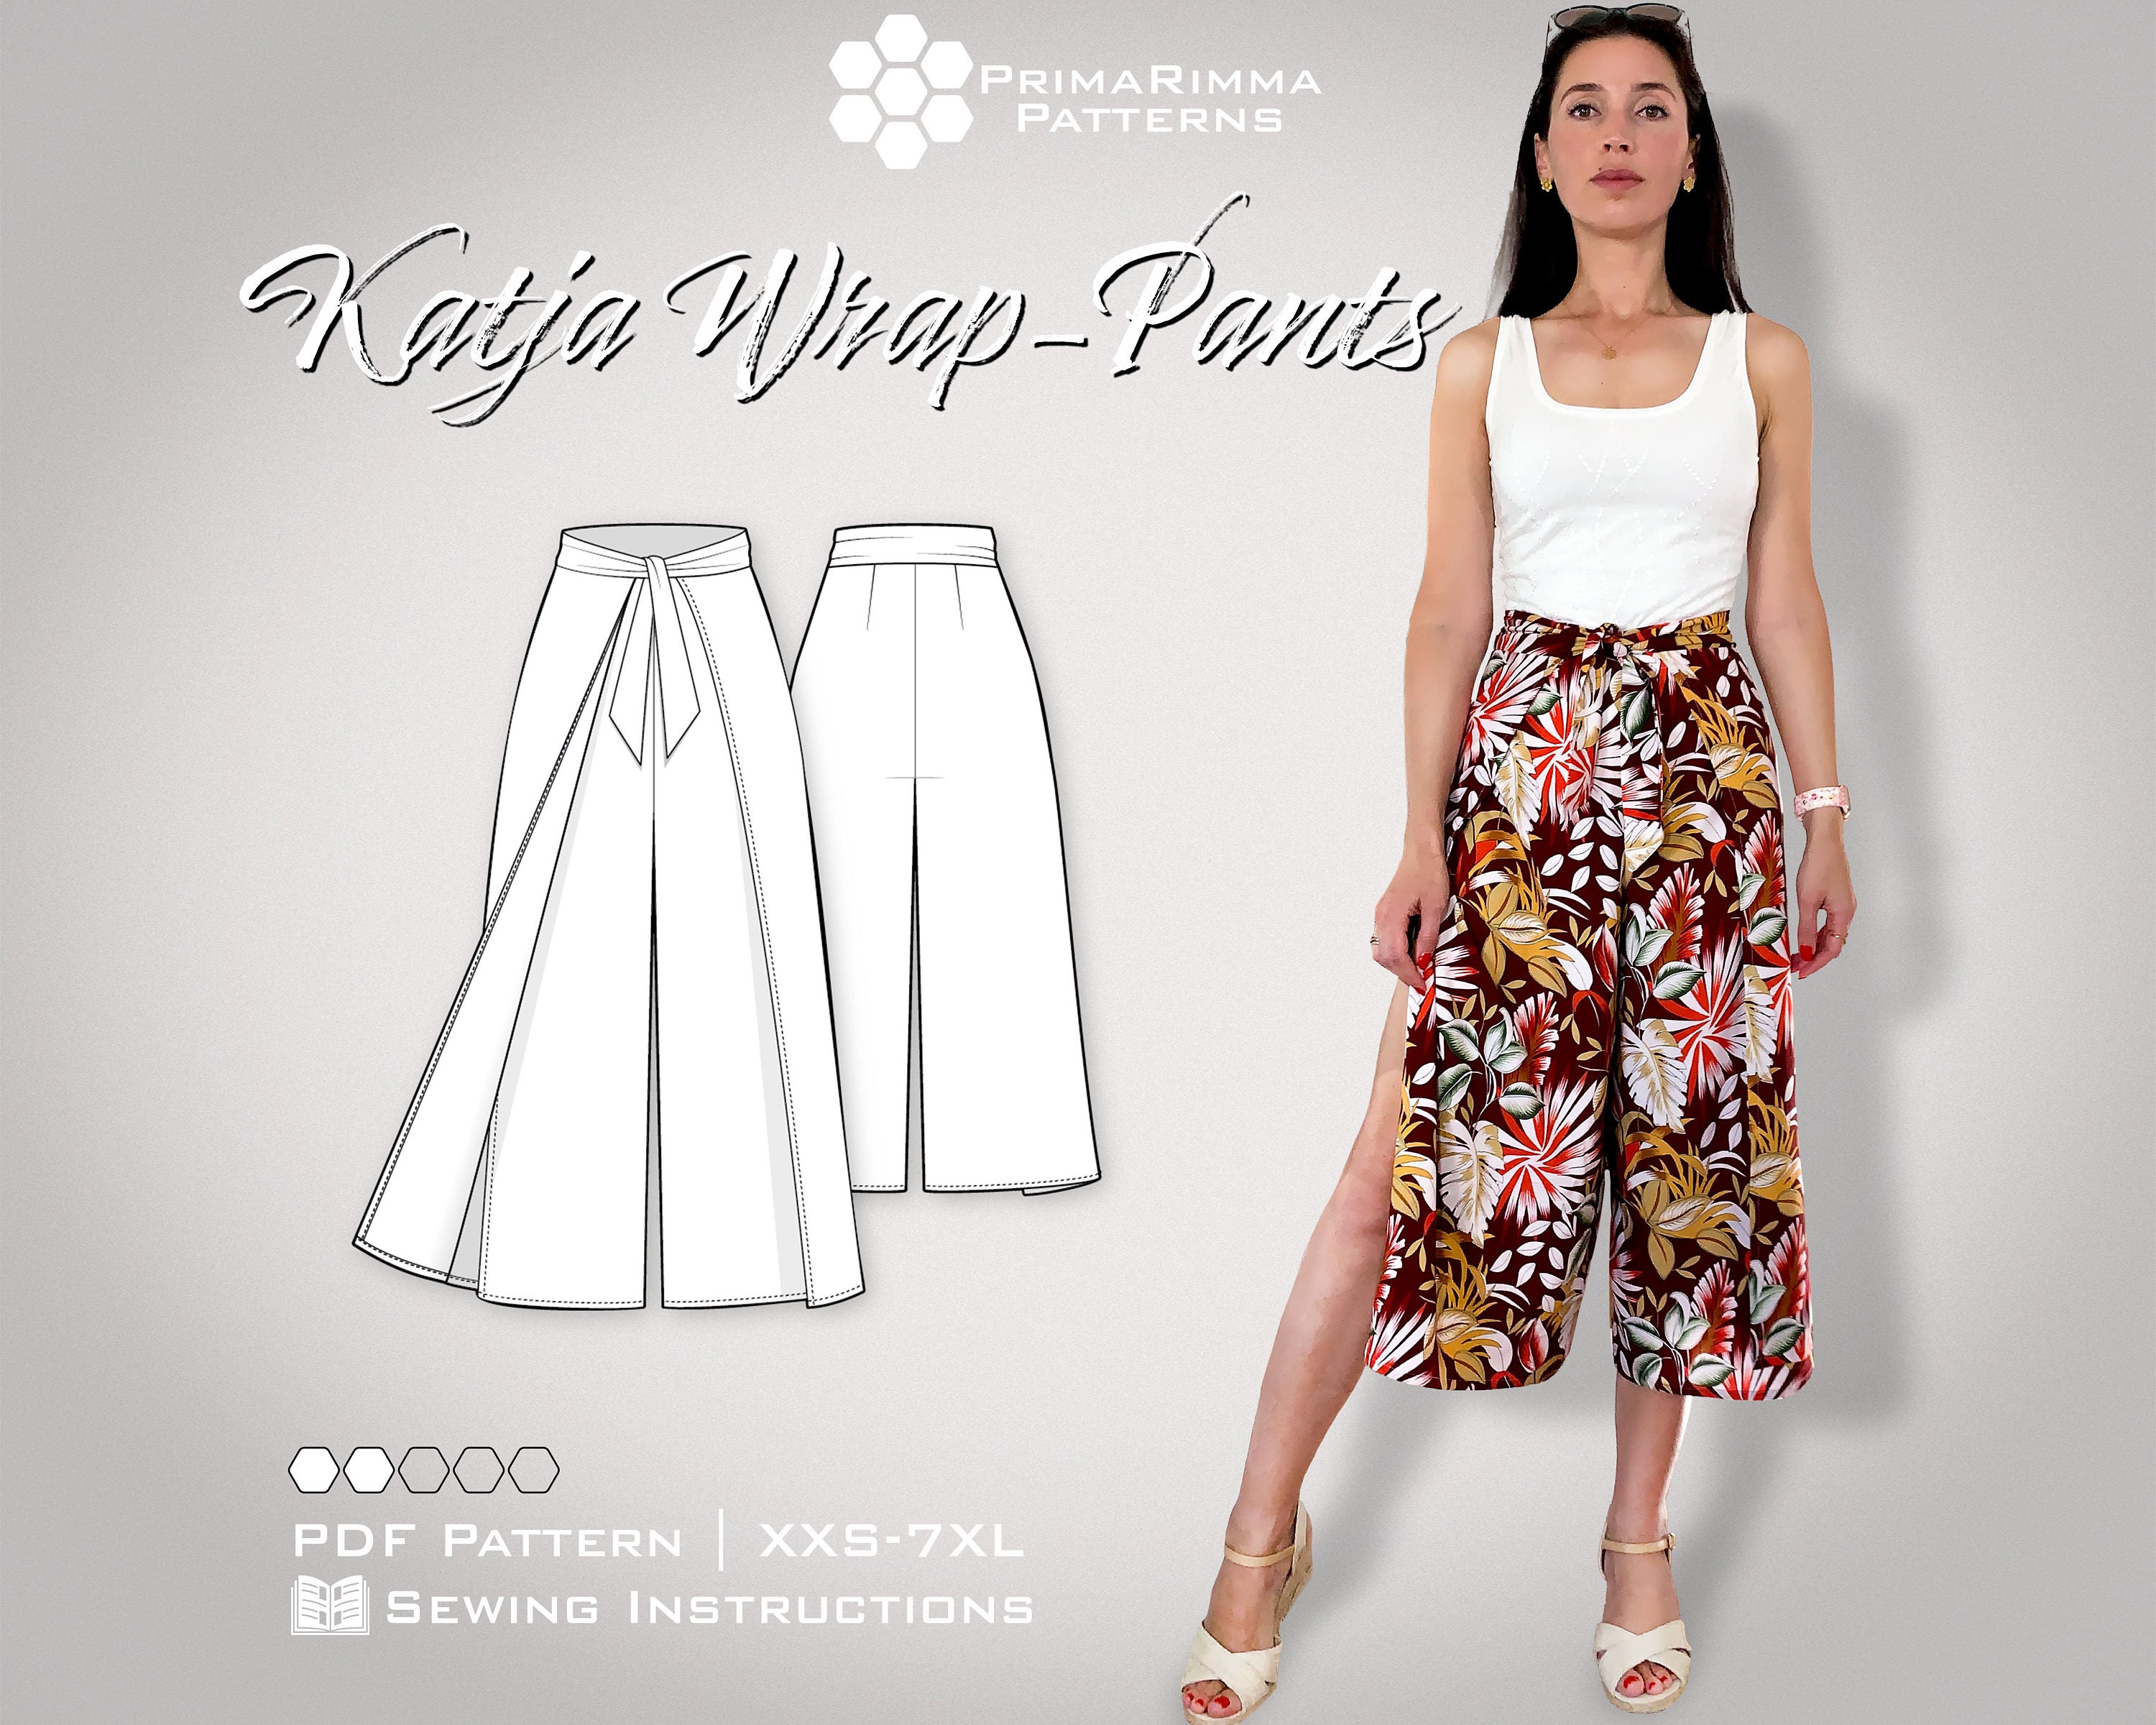 Sewing Pattern Katja Beach-pants Wrap Pants E-book Size XXS-XL